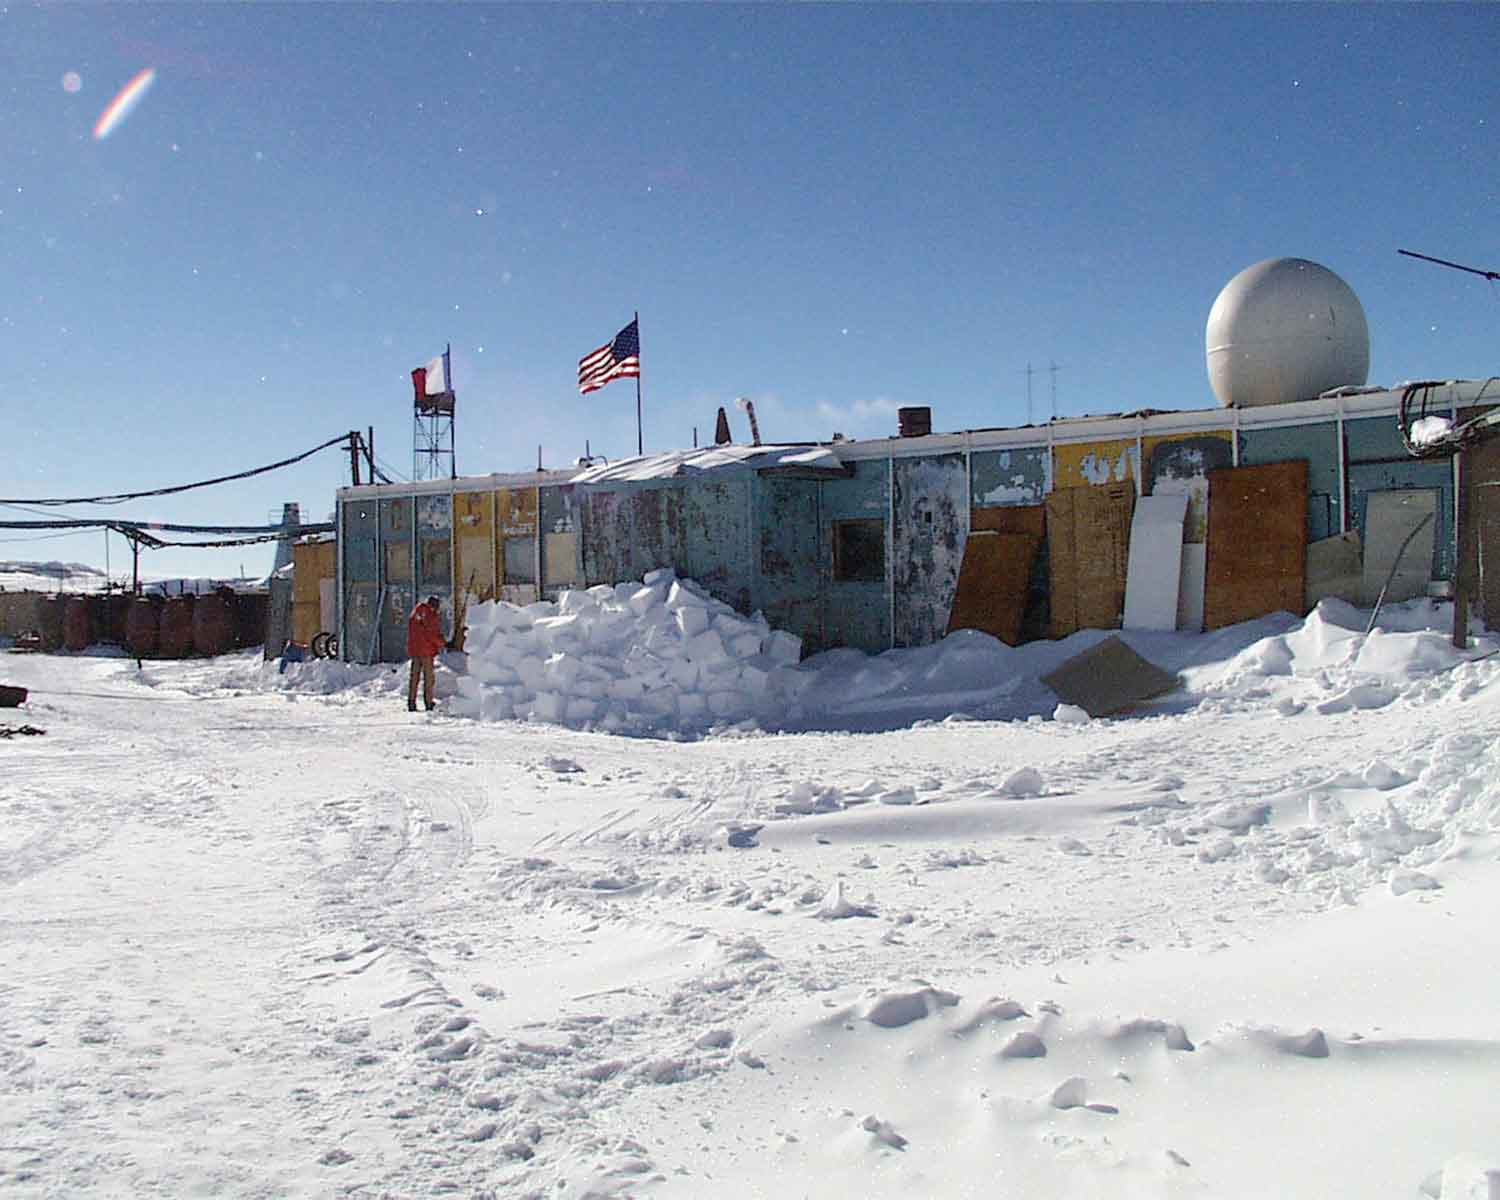 Vostok Research Station on a snowy landscape.